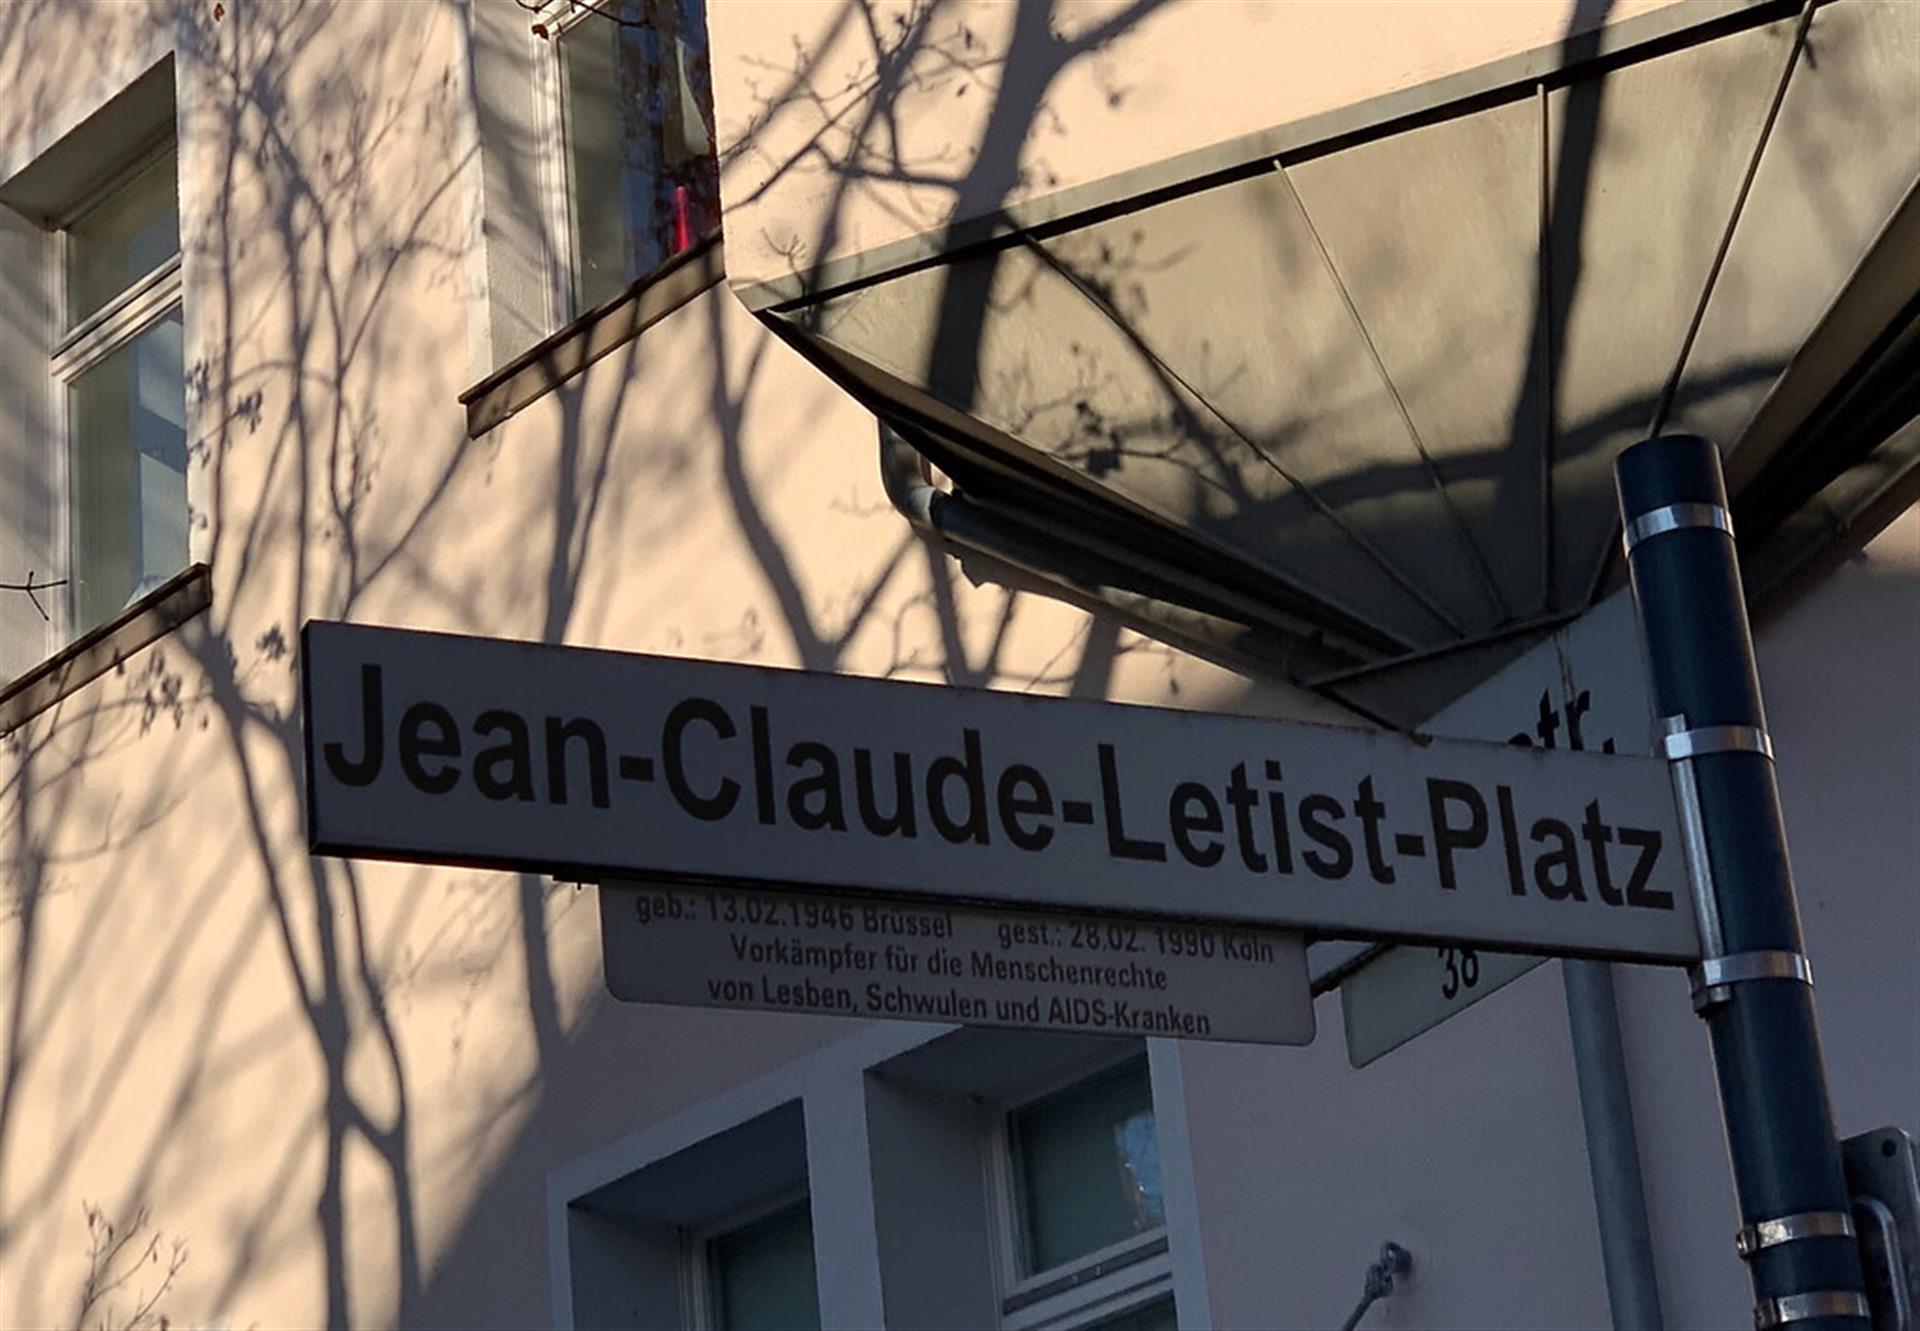 Der Jean-Claude-Letist-Platz in Köln-Altstadt-Süd (2021). Das Straßenschild informiert über die Lebensdaten und die Arbeit von Letist in Köln. &copy; Janina Schwiderski / Landschaftsverband Rheinland / CC-BY-4.0